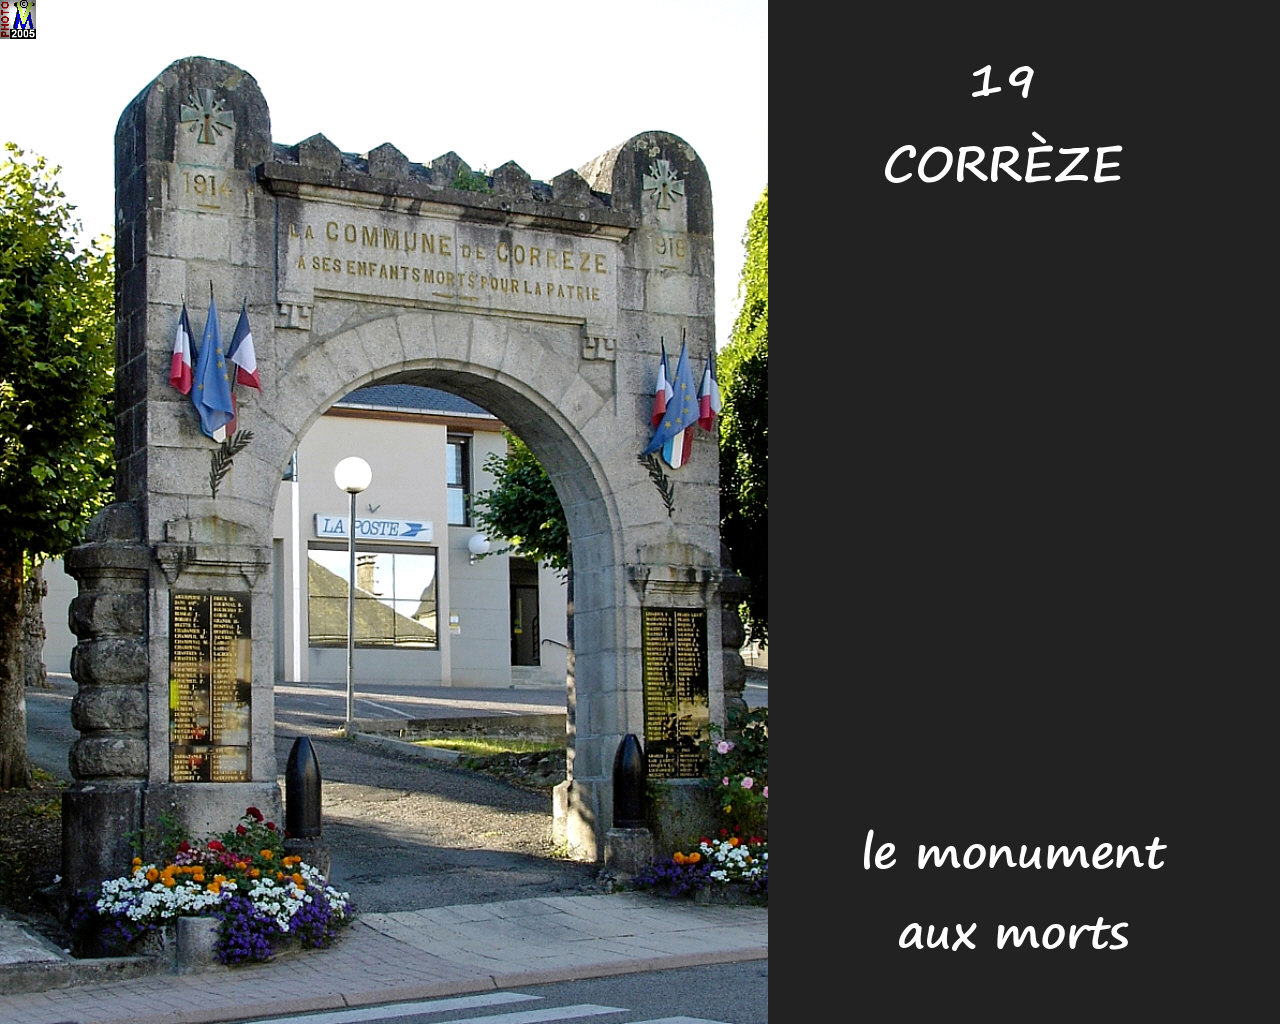 19CORREZE monument 100.jpg